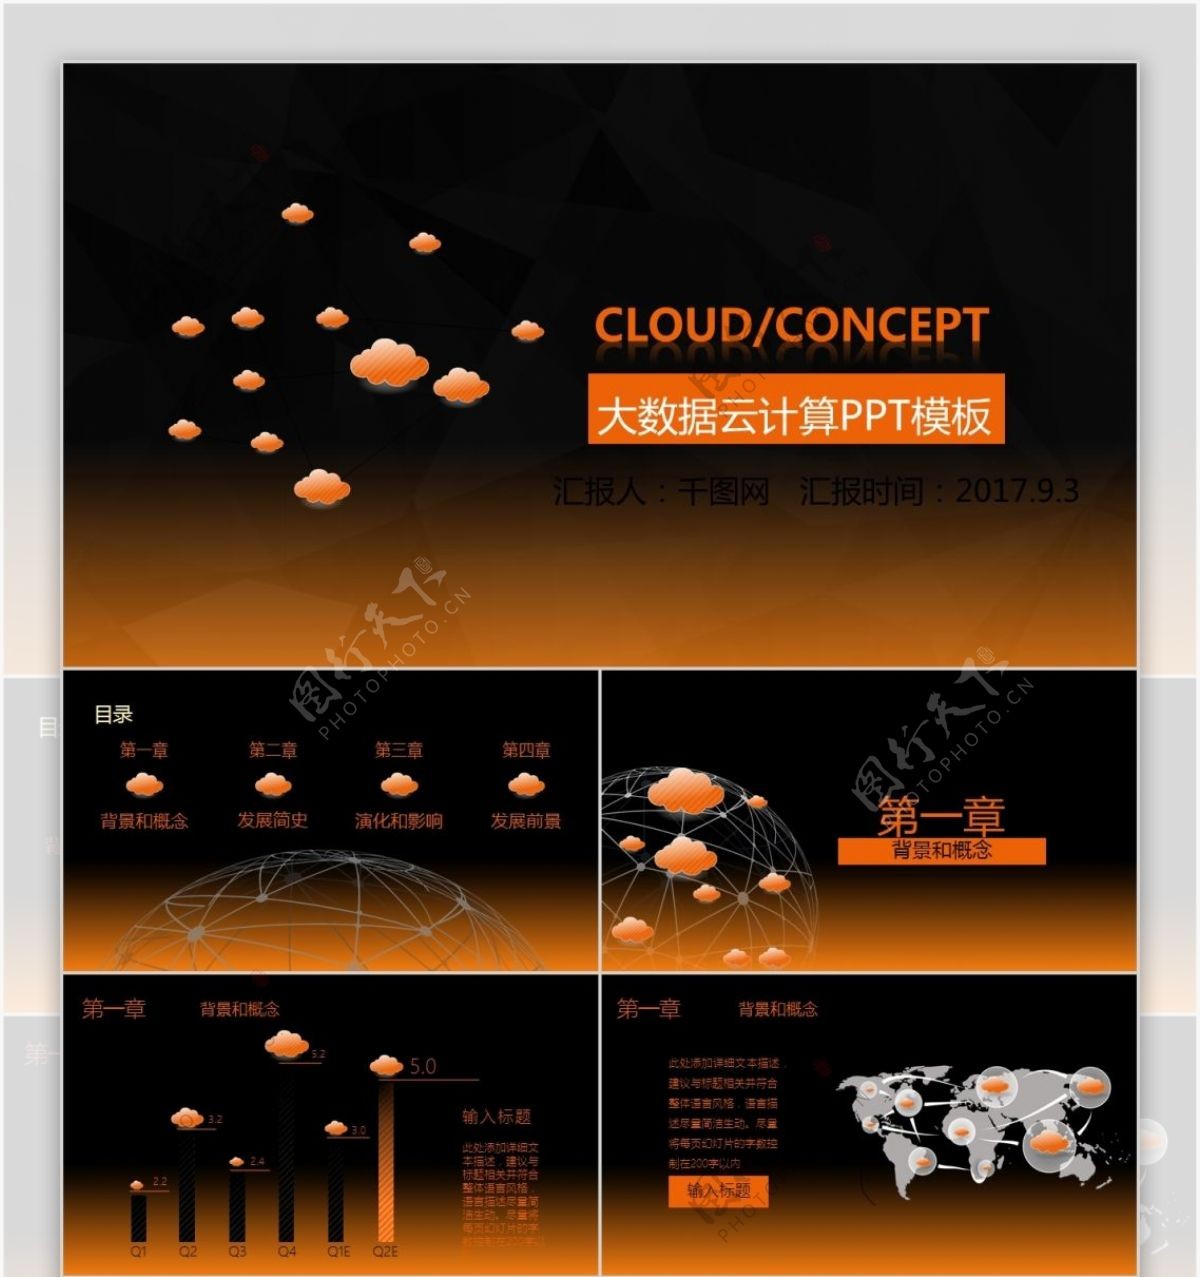 橙黑简约大数据云计算动态PPT模板